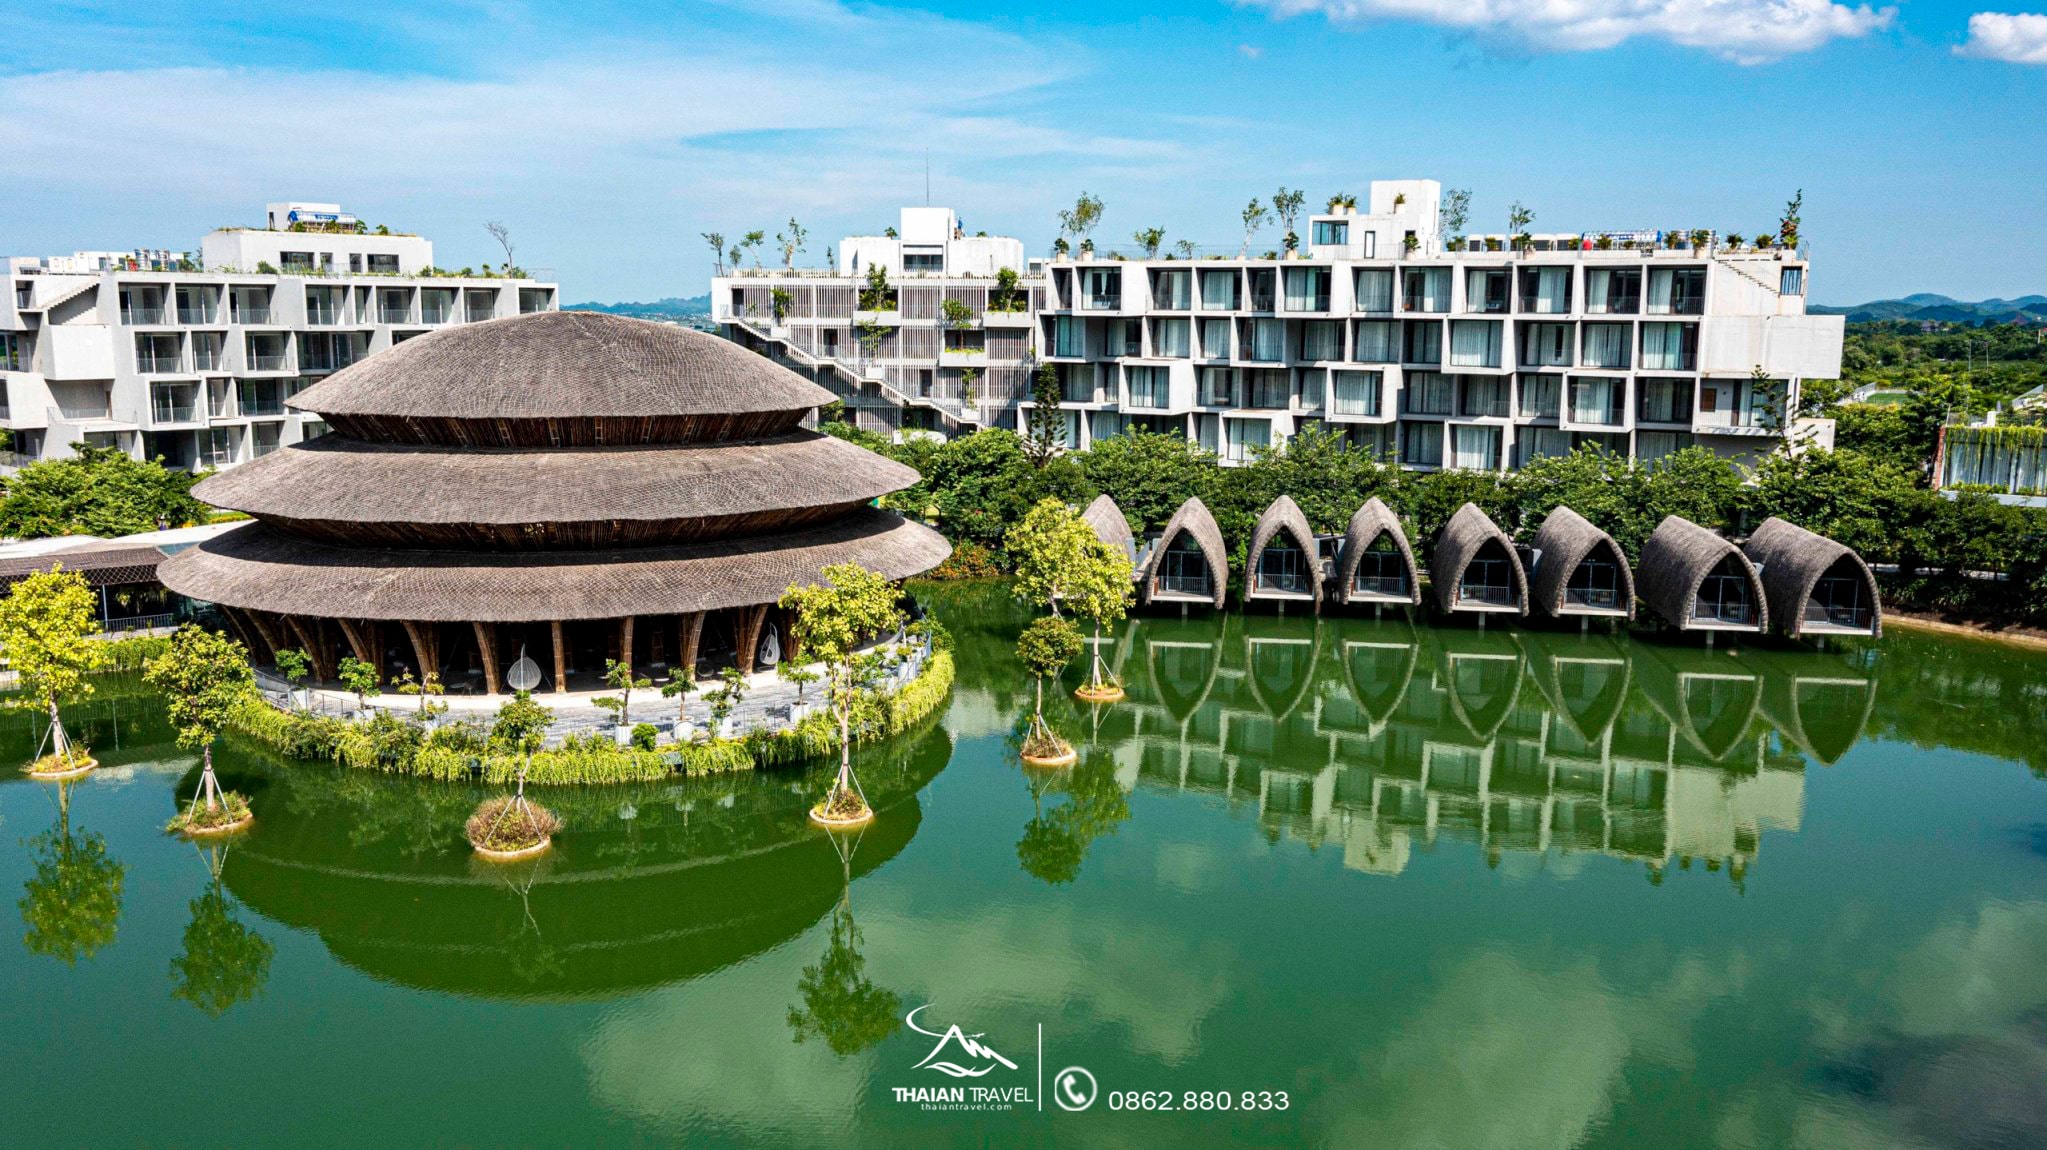 Combo Tắm khoáng nóng Vedana Resort - Thái An Travel - 10